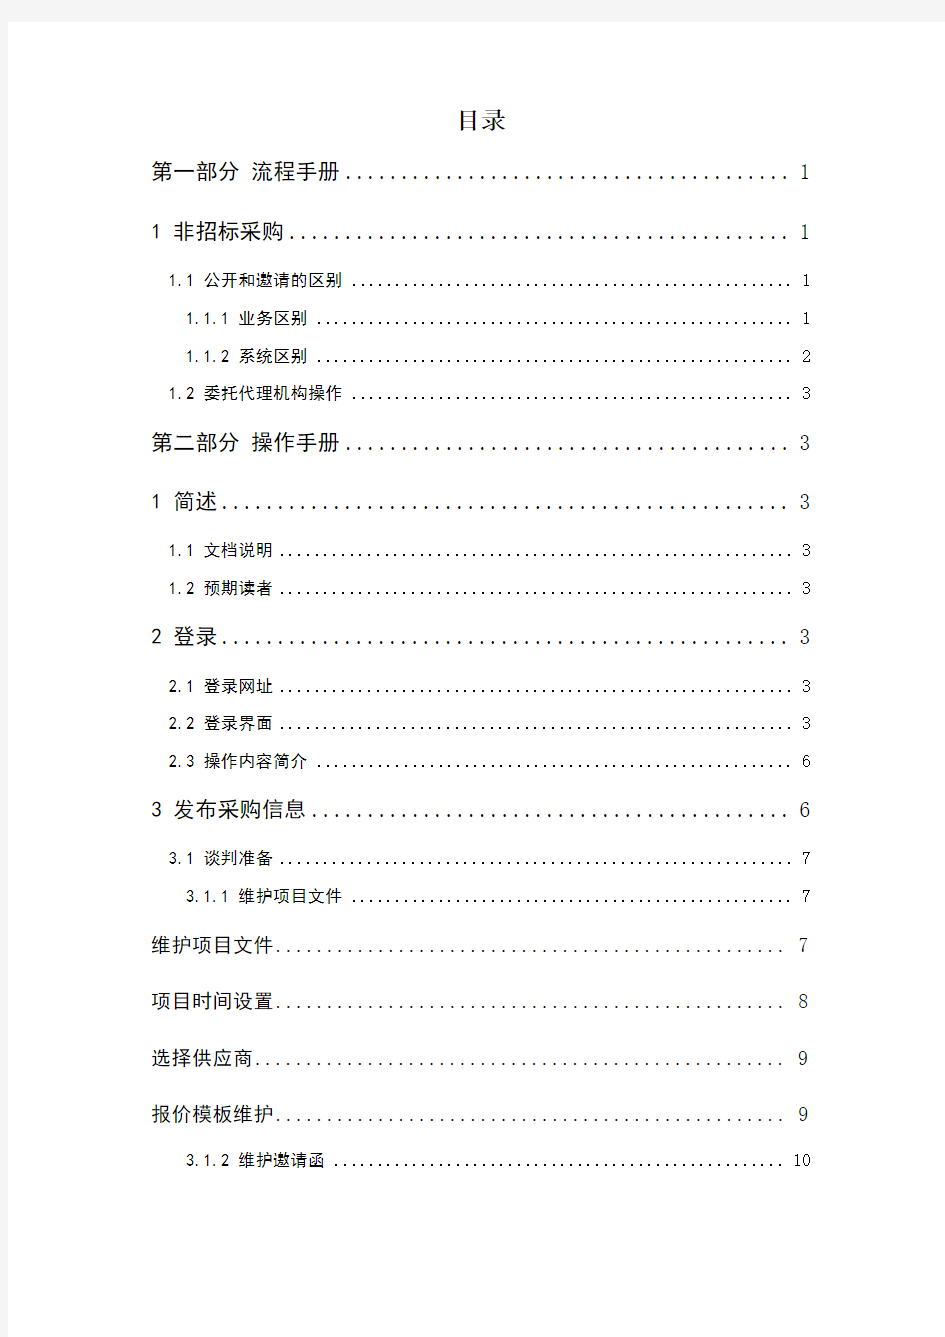 中国移动电子采购与招标投标系统V版本操作手册其他采购代理机构项目经理分册v